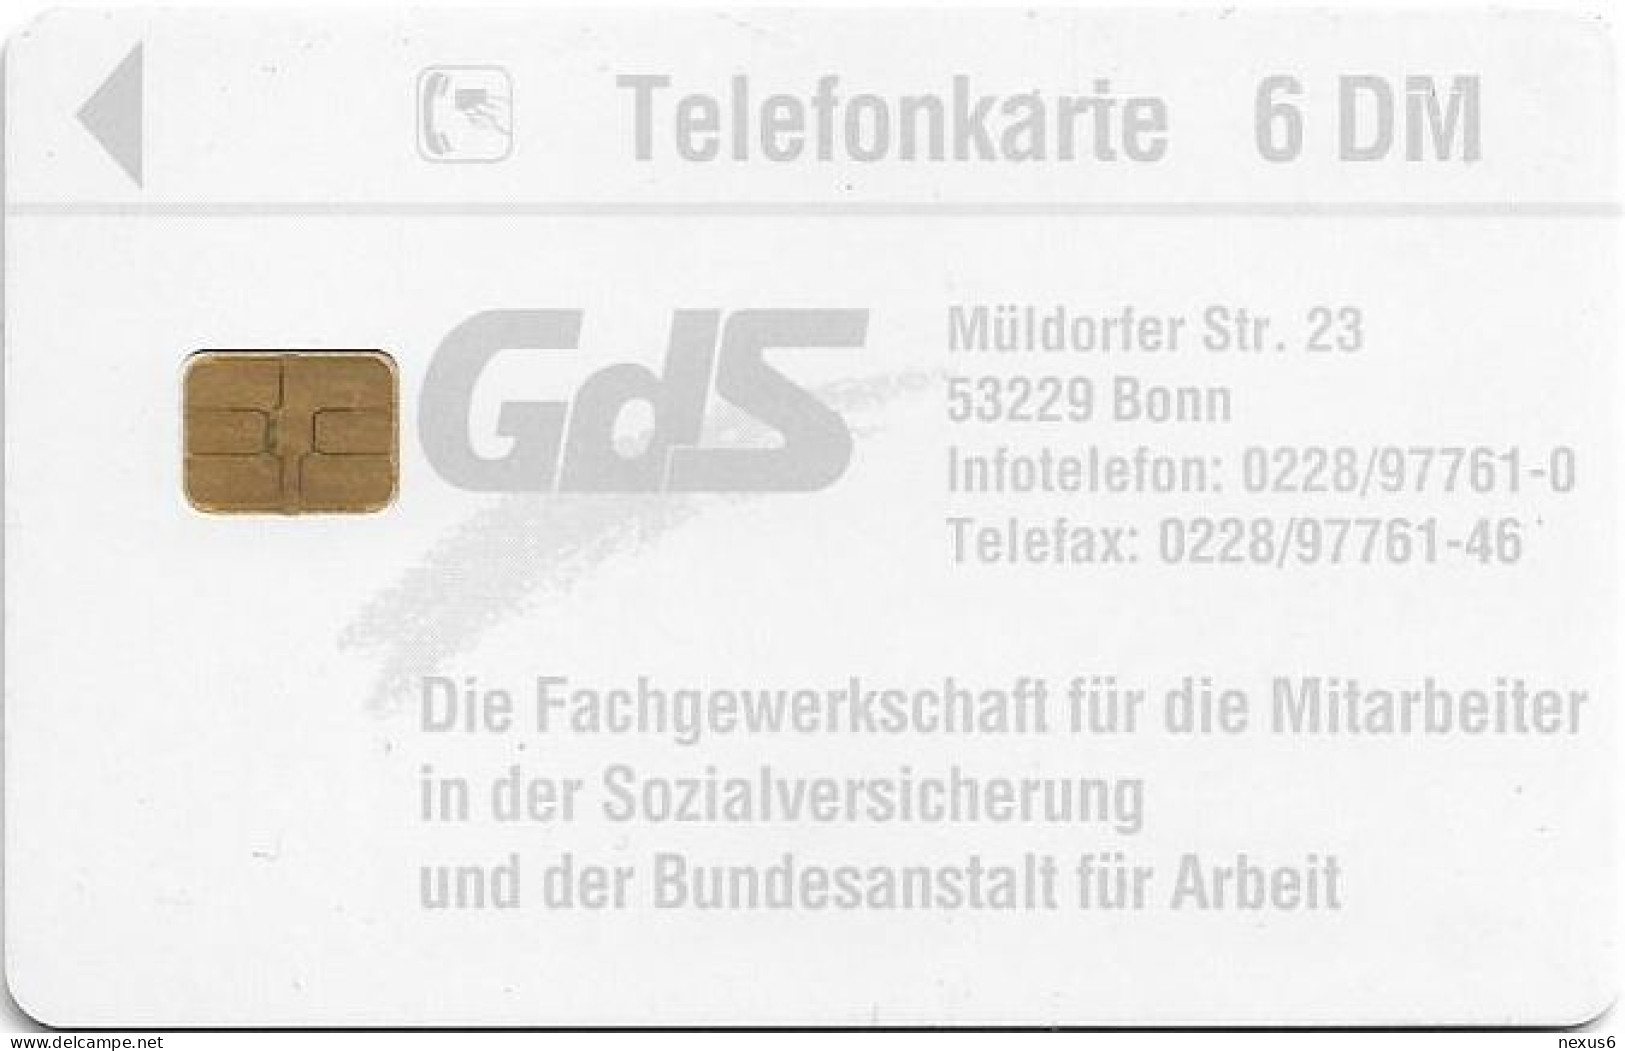 Germany - GdS - Gewerkschaft Der Sozialversicherung 2 - O 0387 - 03.1995, 6DM, 2.000ex, Used - O-Series: Kundenserie Vom Sammlerservice Ausgeschlossen